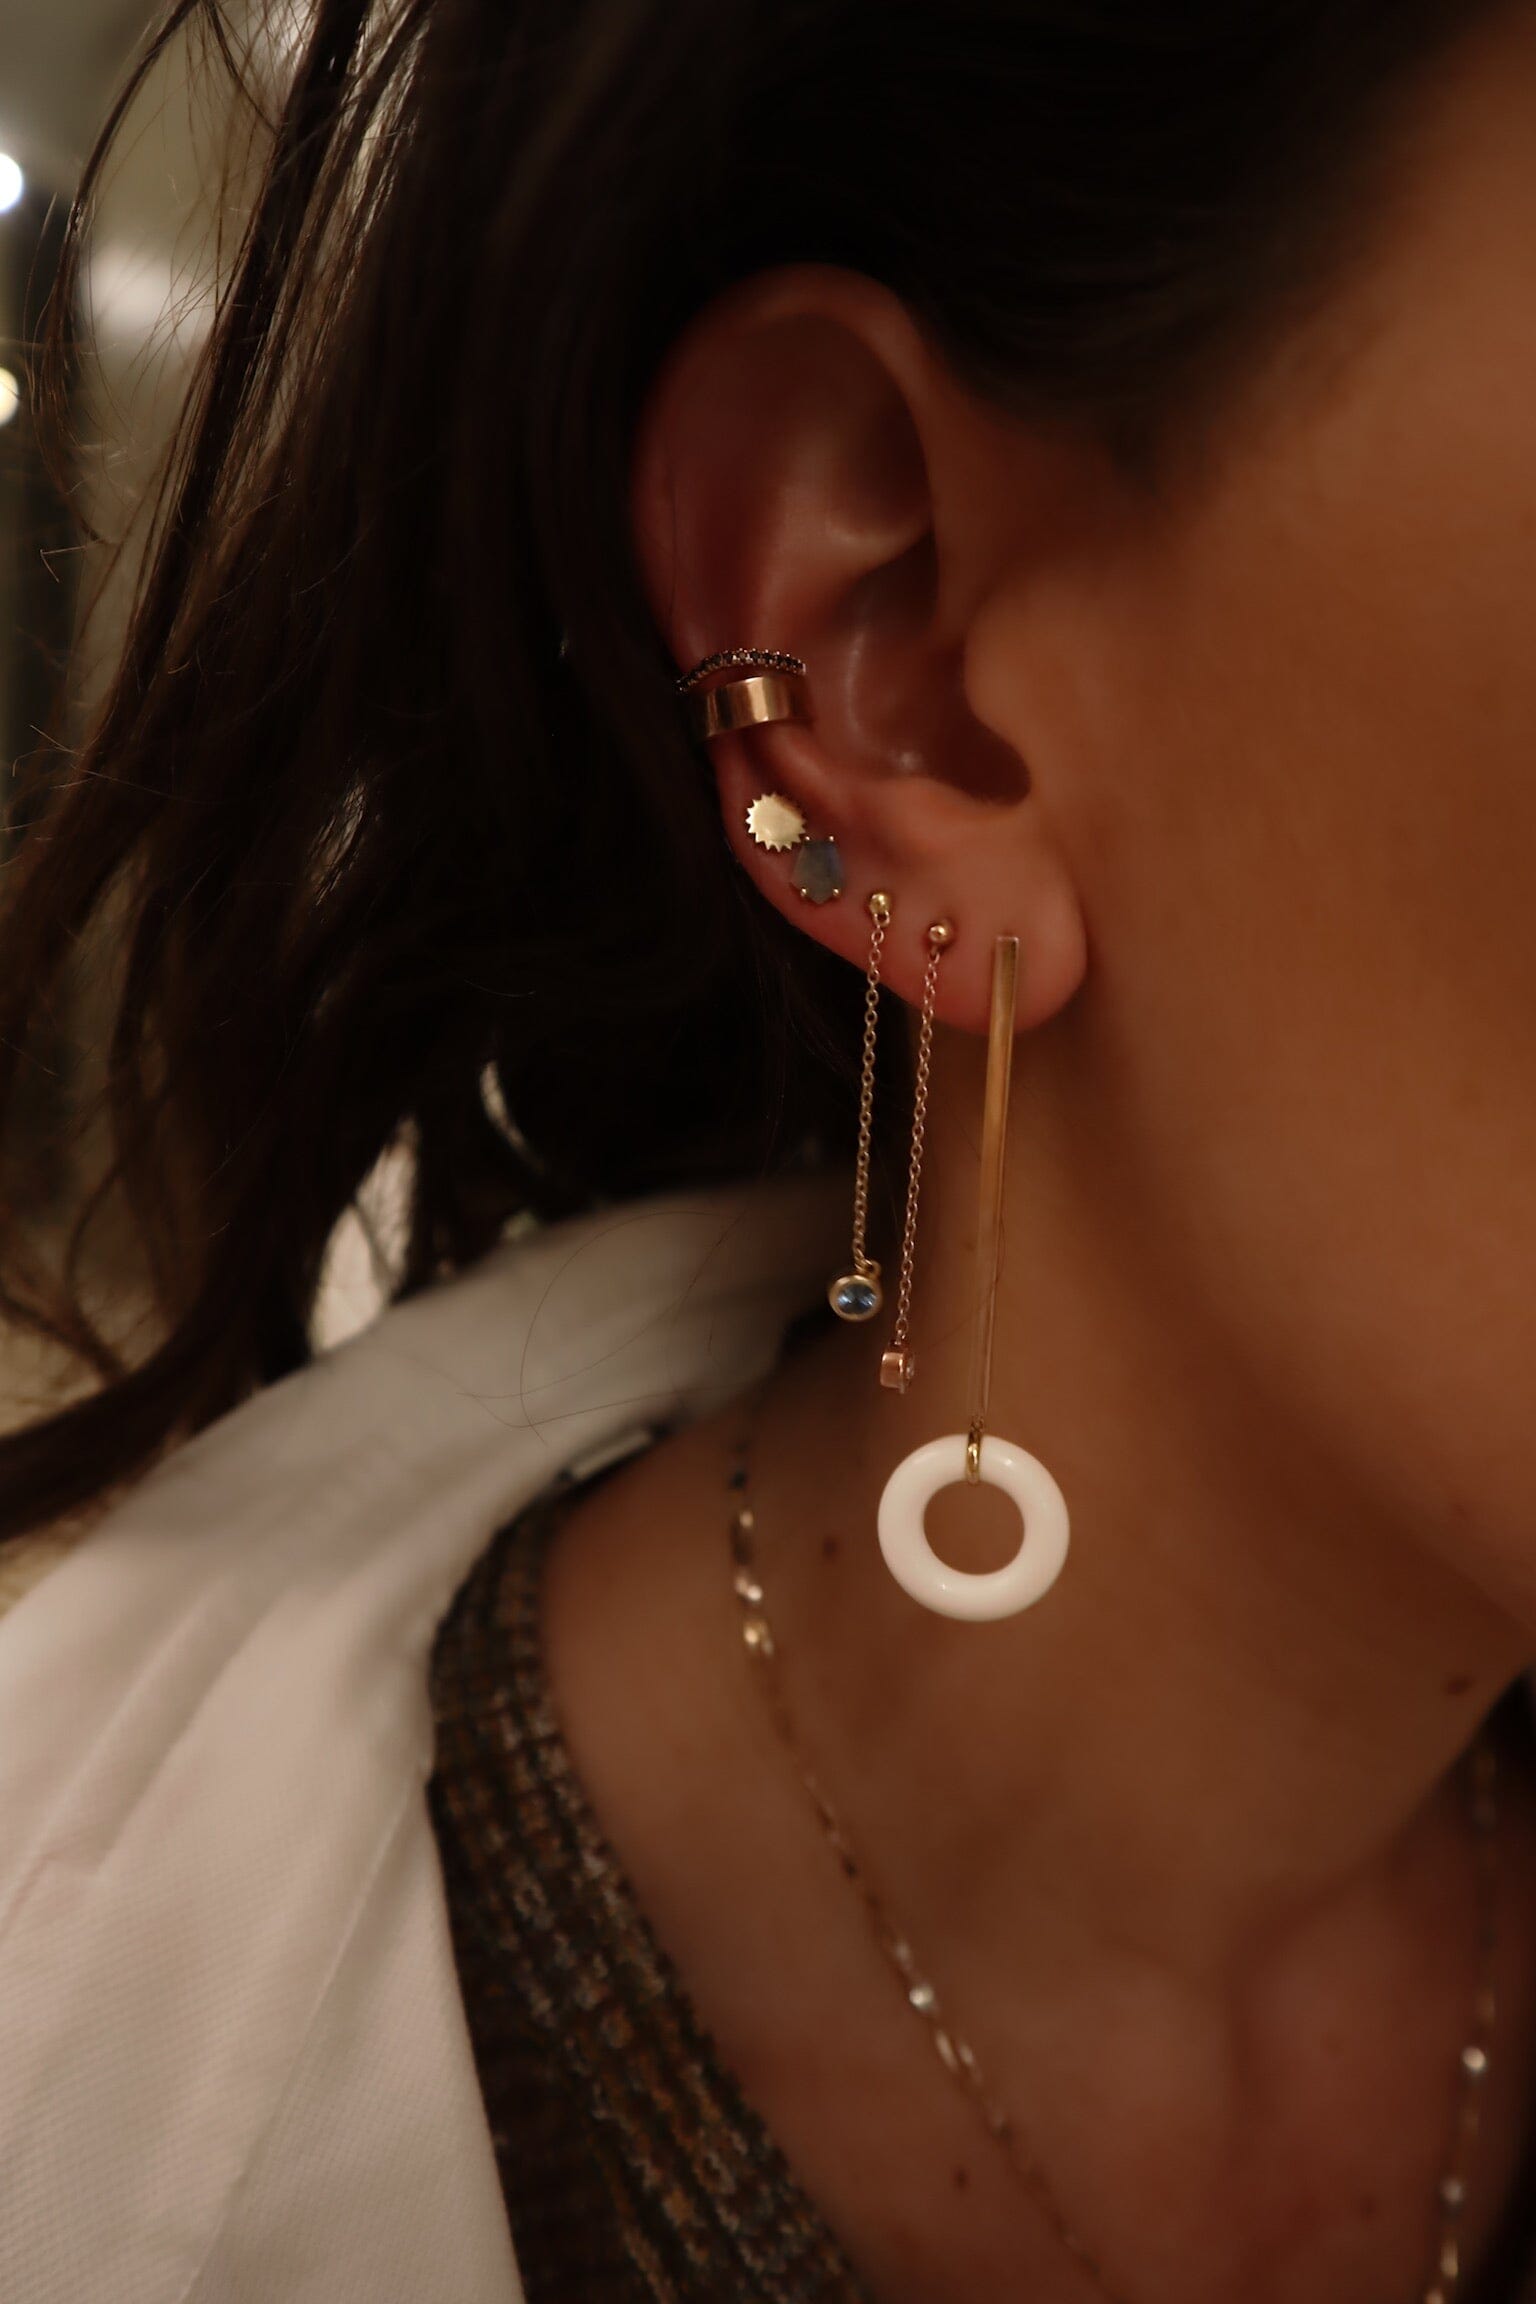 Gold & Black Two-Tone Ear Cuff Earrings - BONDEYE JEWELRY ®